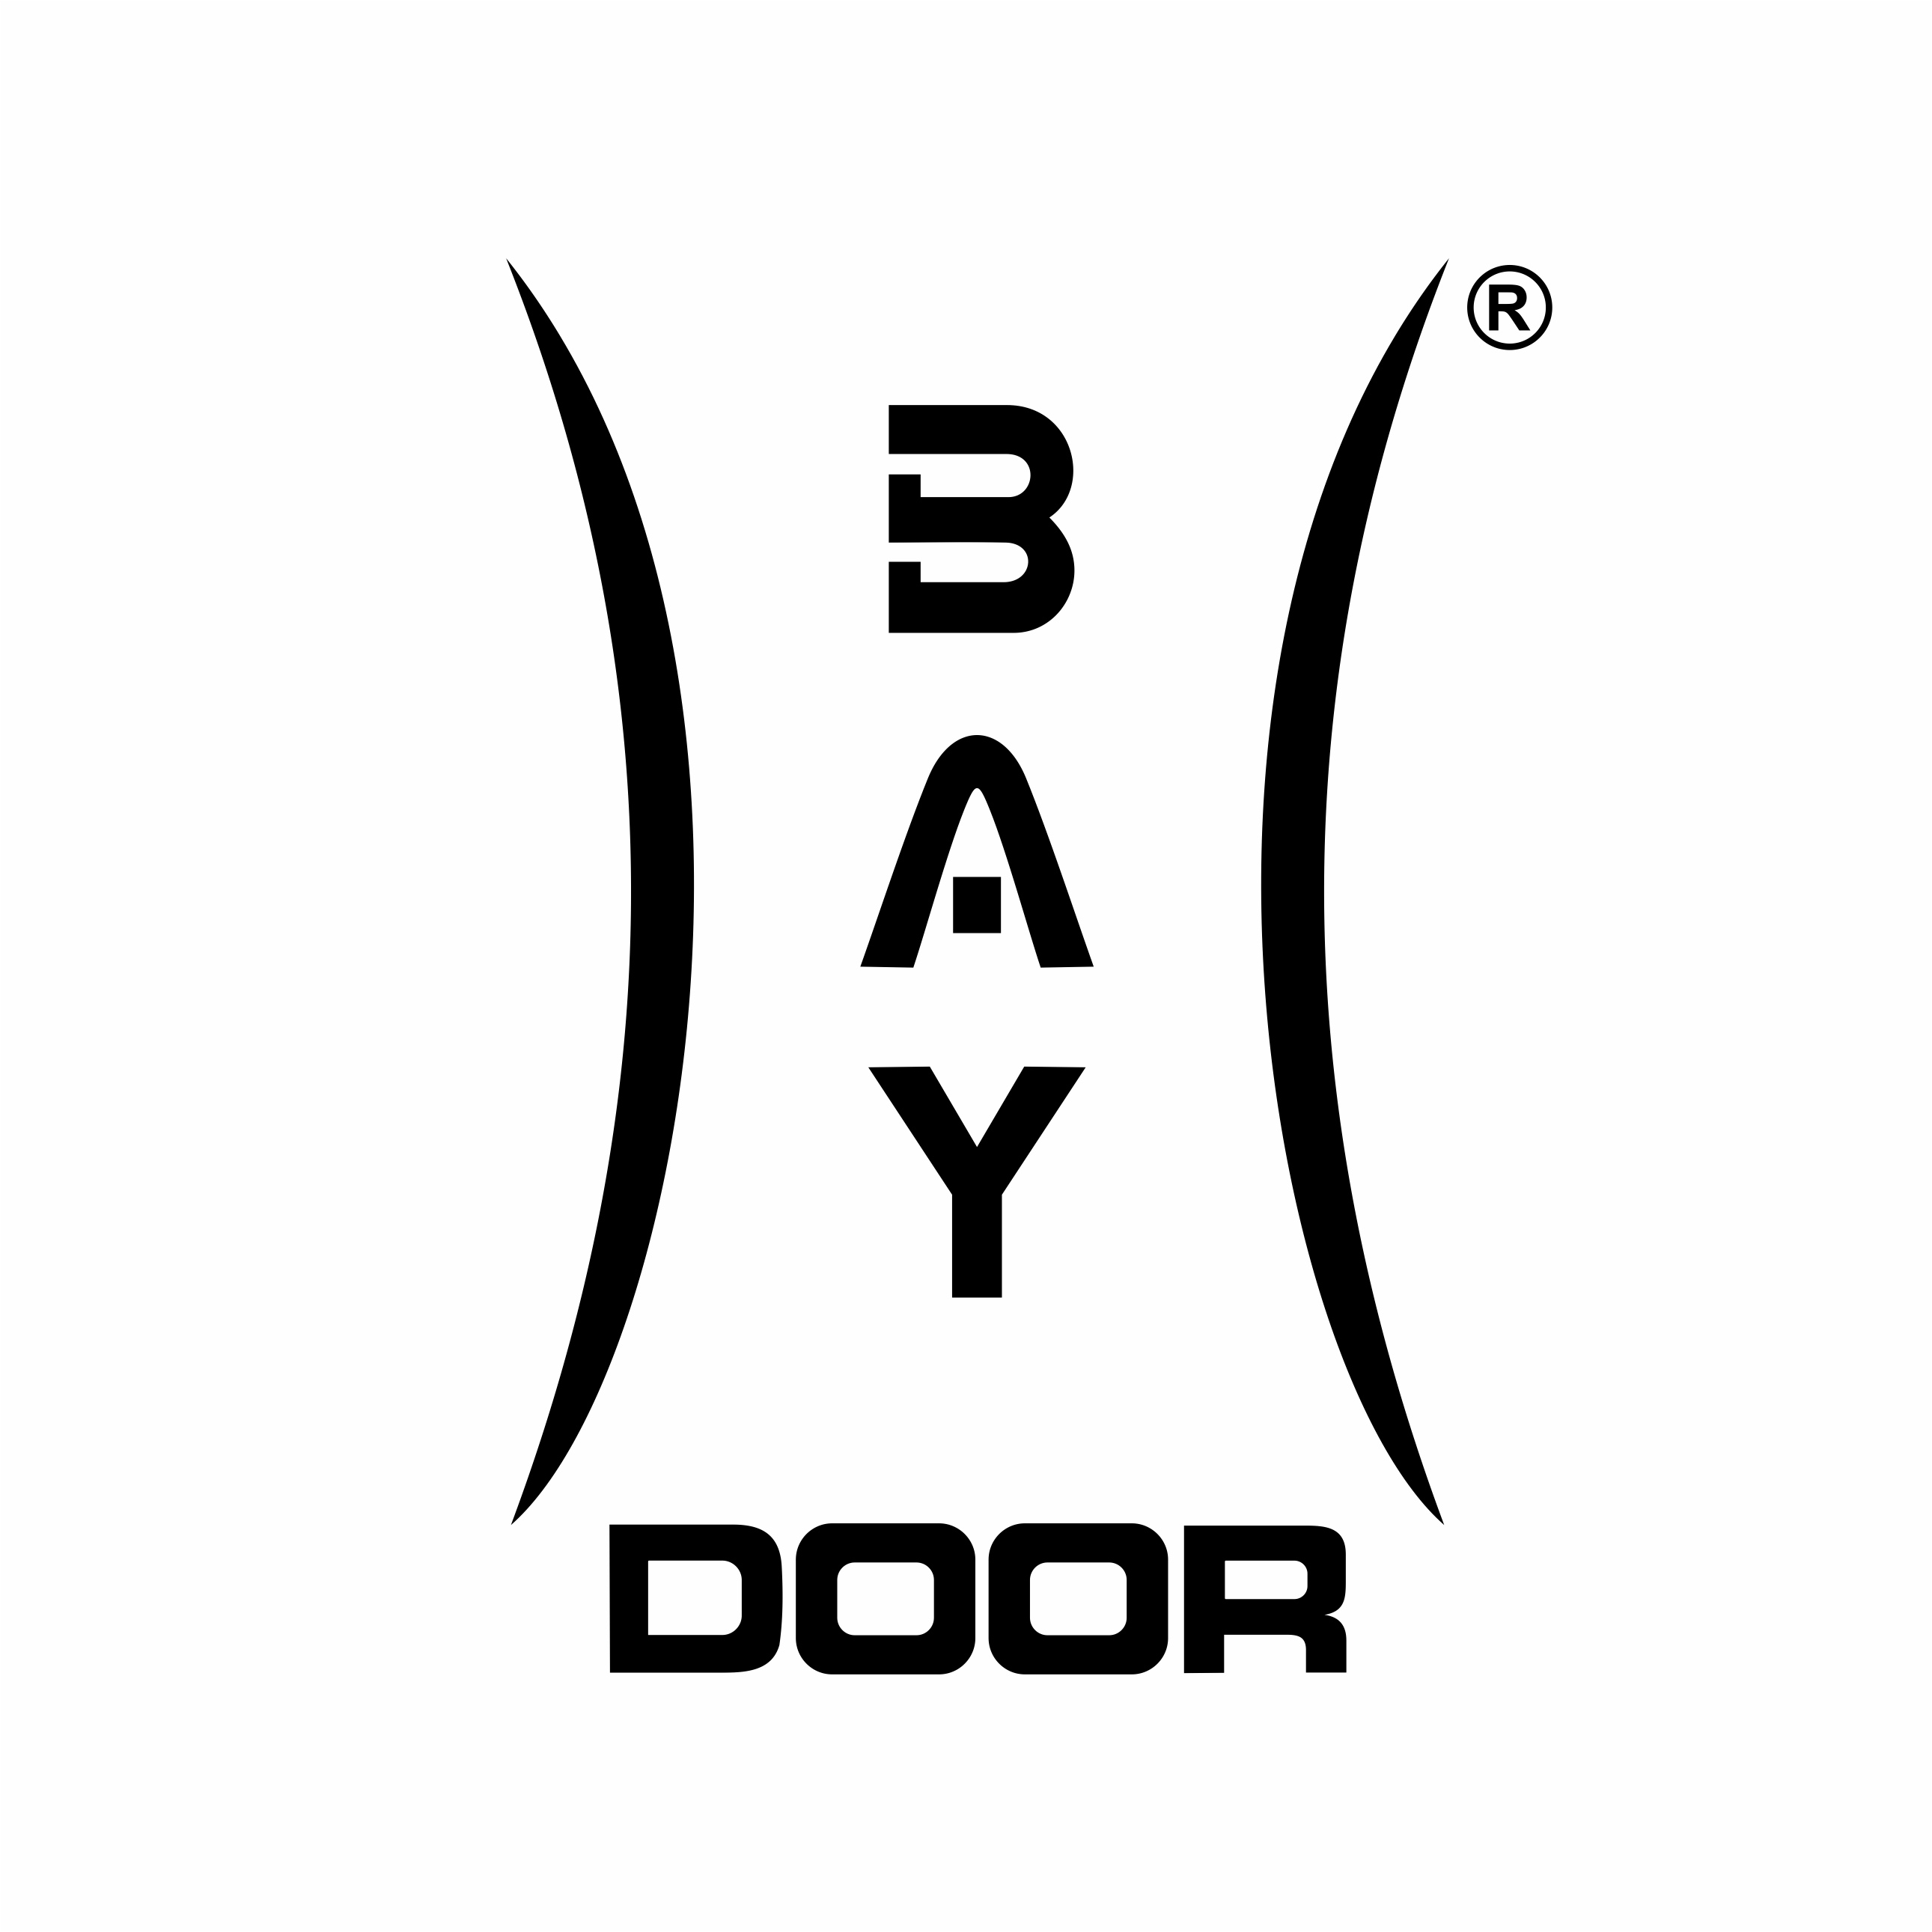 BAY DOOR